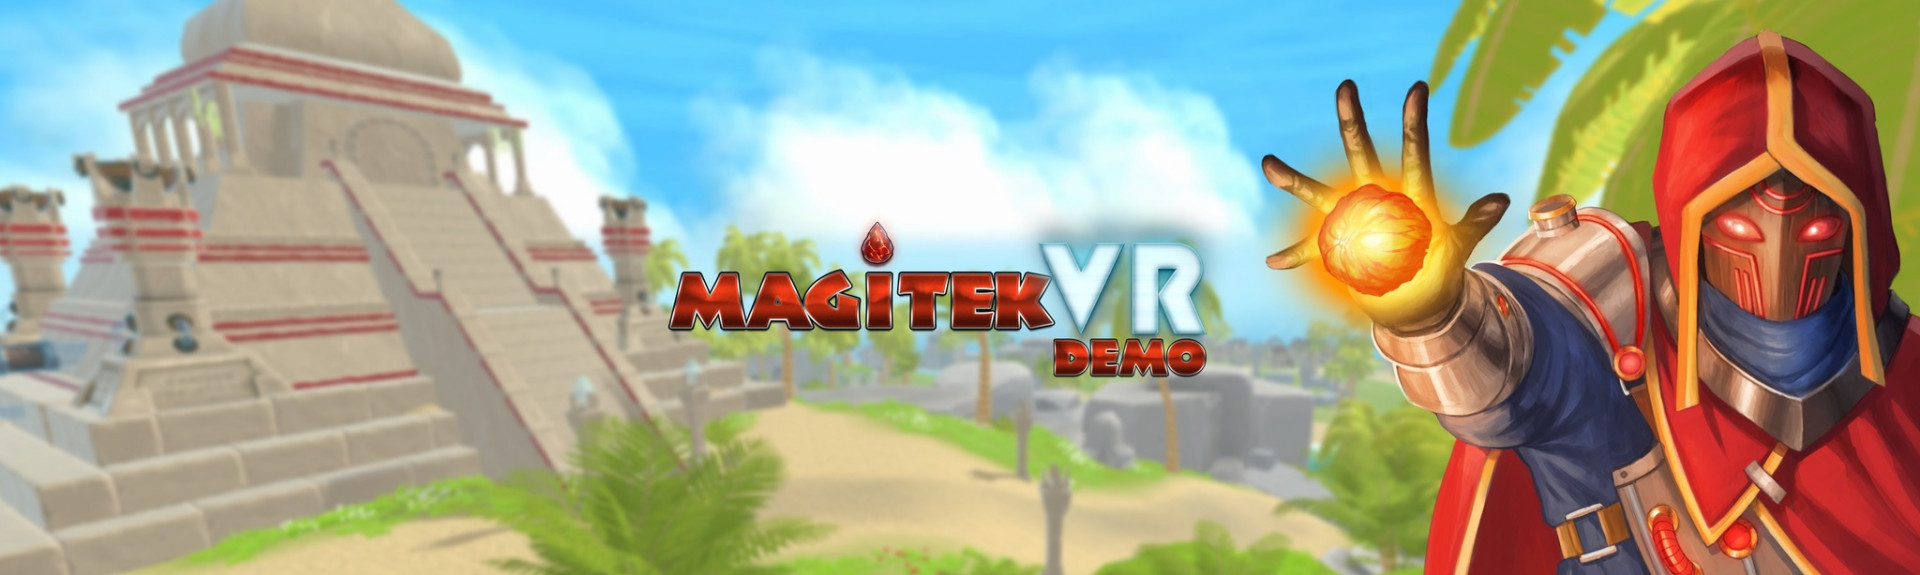 Magitek VR Demo